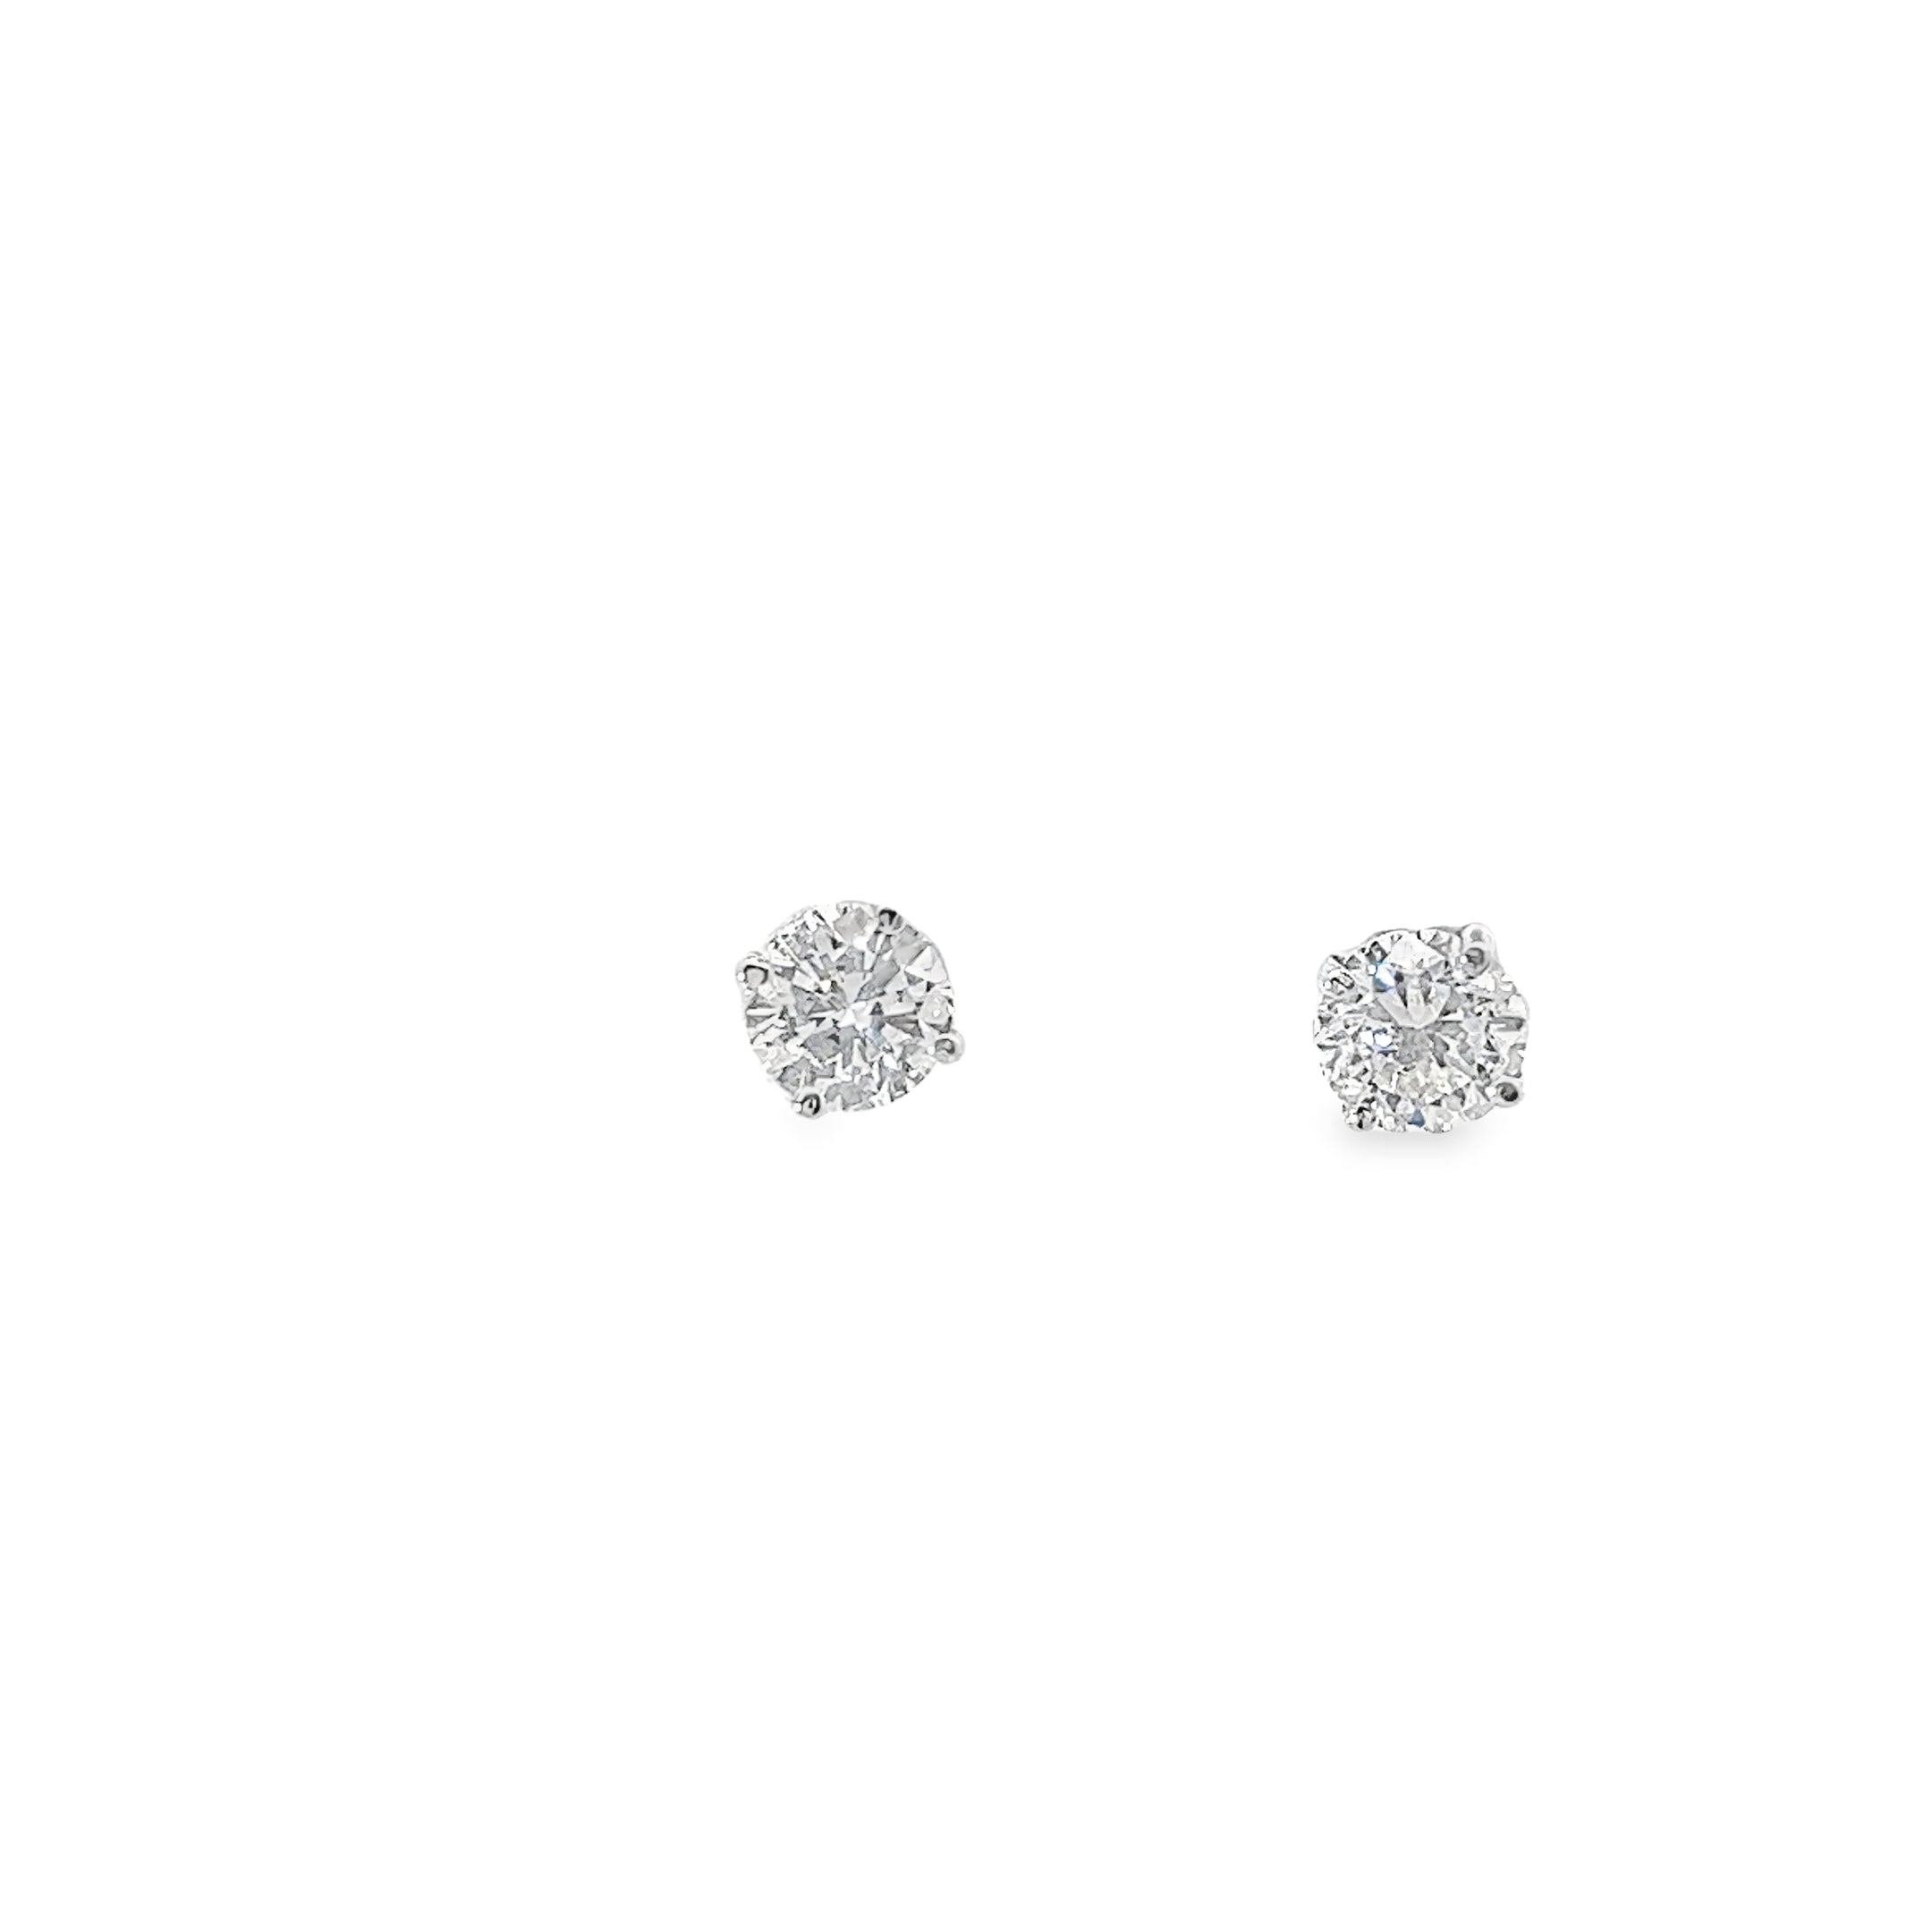 Ladies 14k white gold Diamond Stud earrings